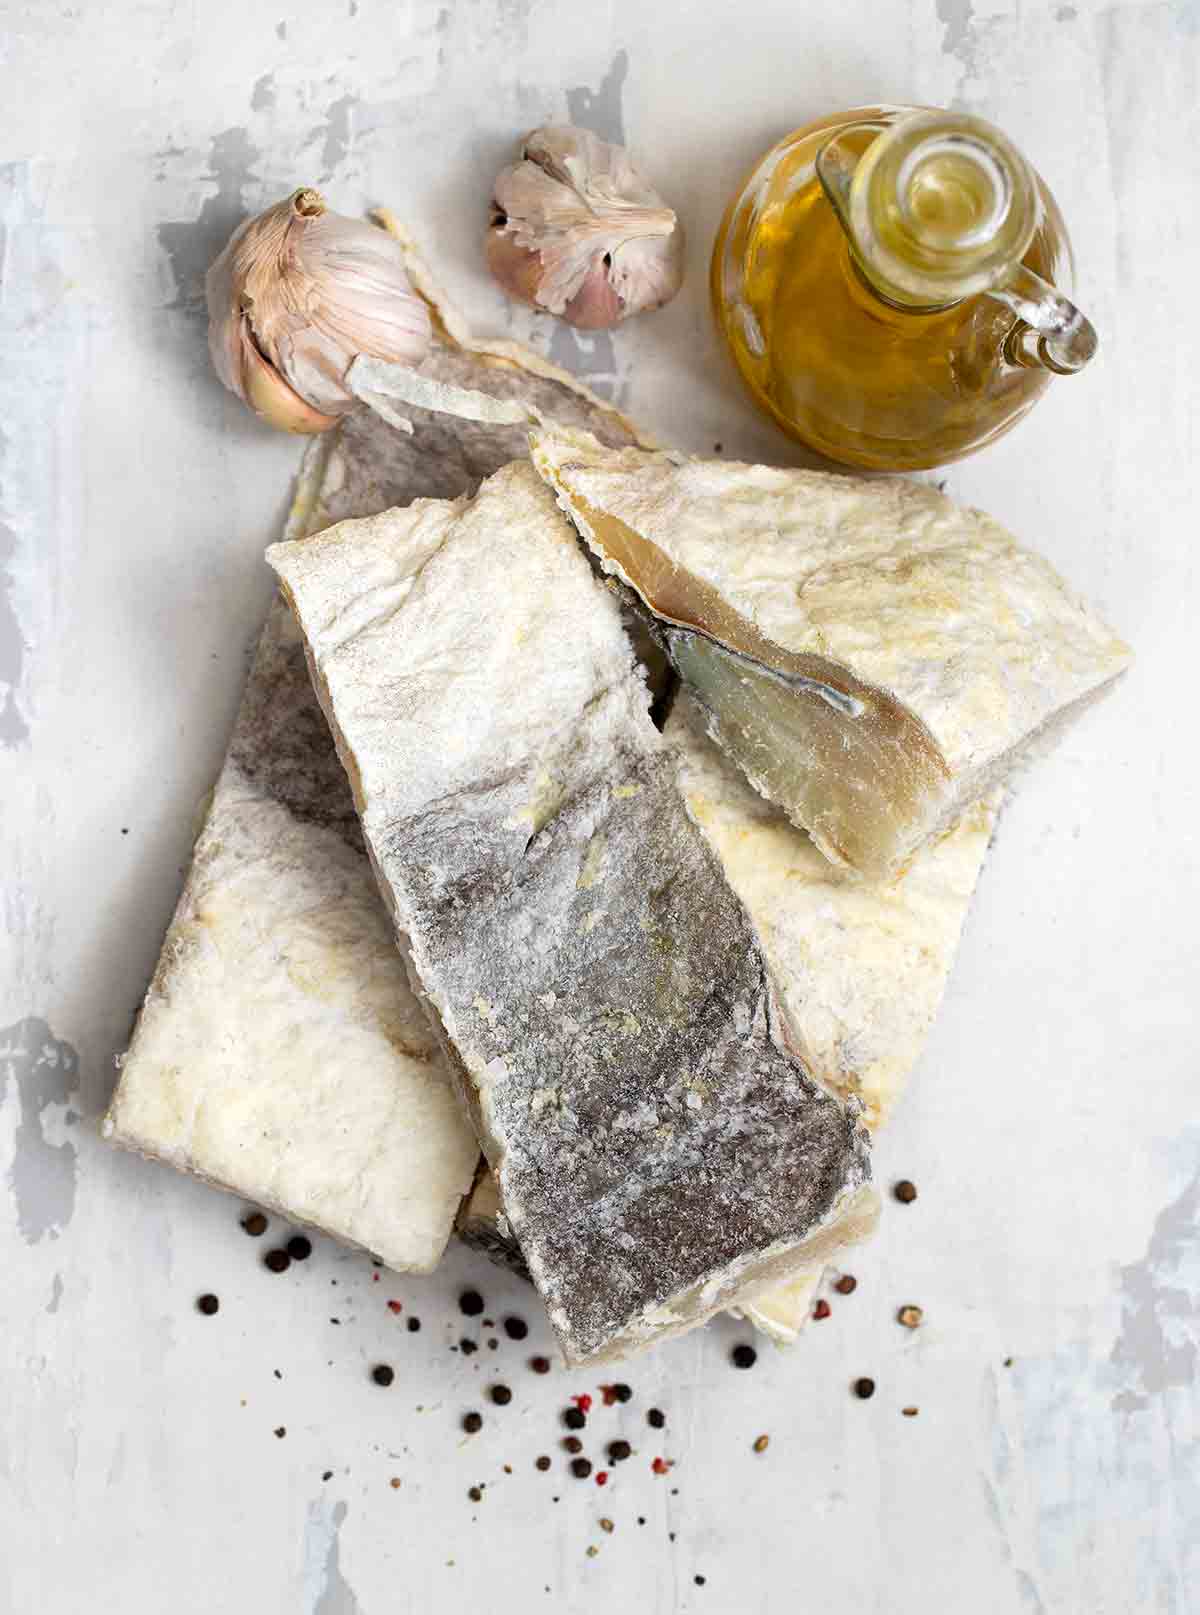 Salt cod fillets, garlic, and olive oil on marble.